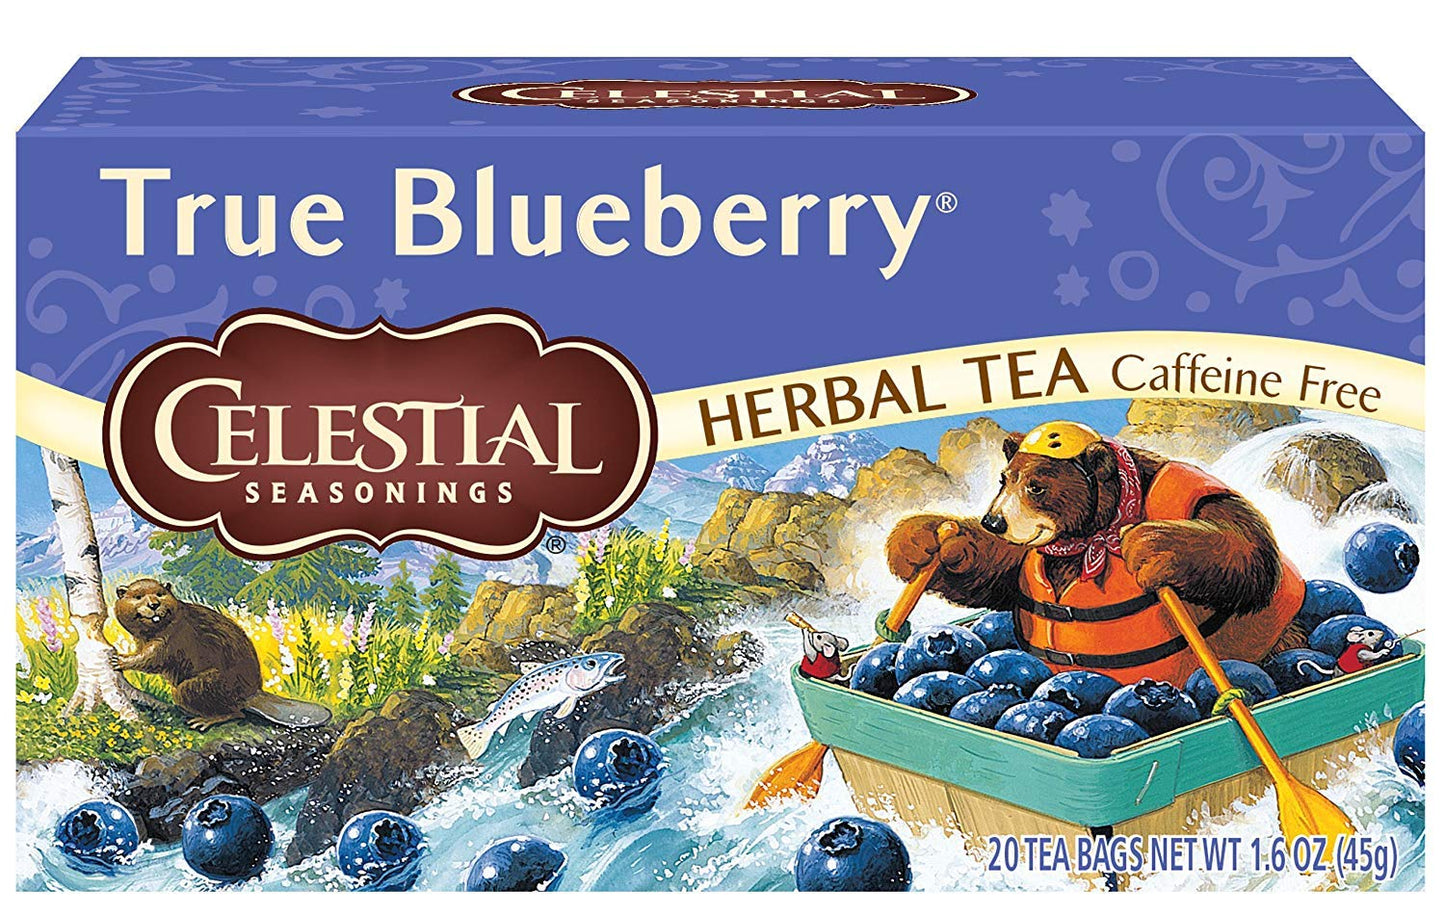 Celestial Seasonings True Blueberry